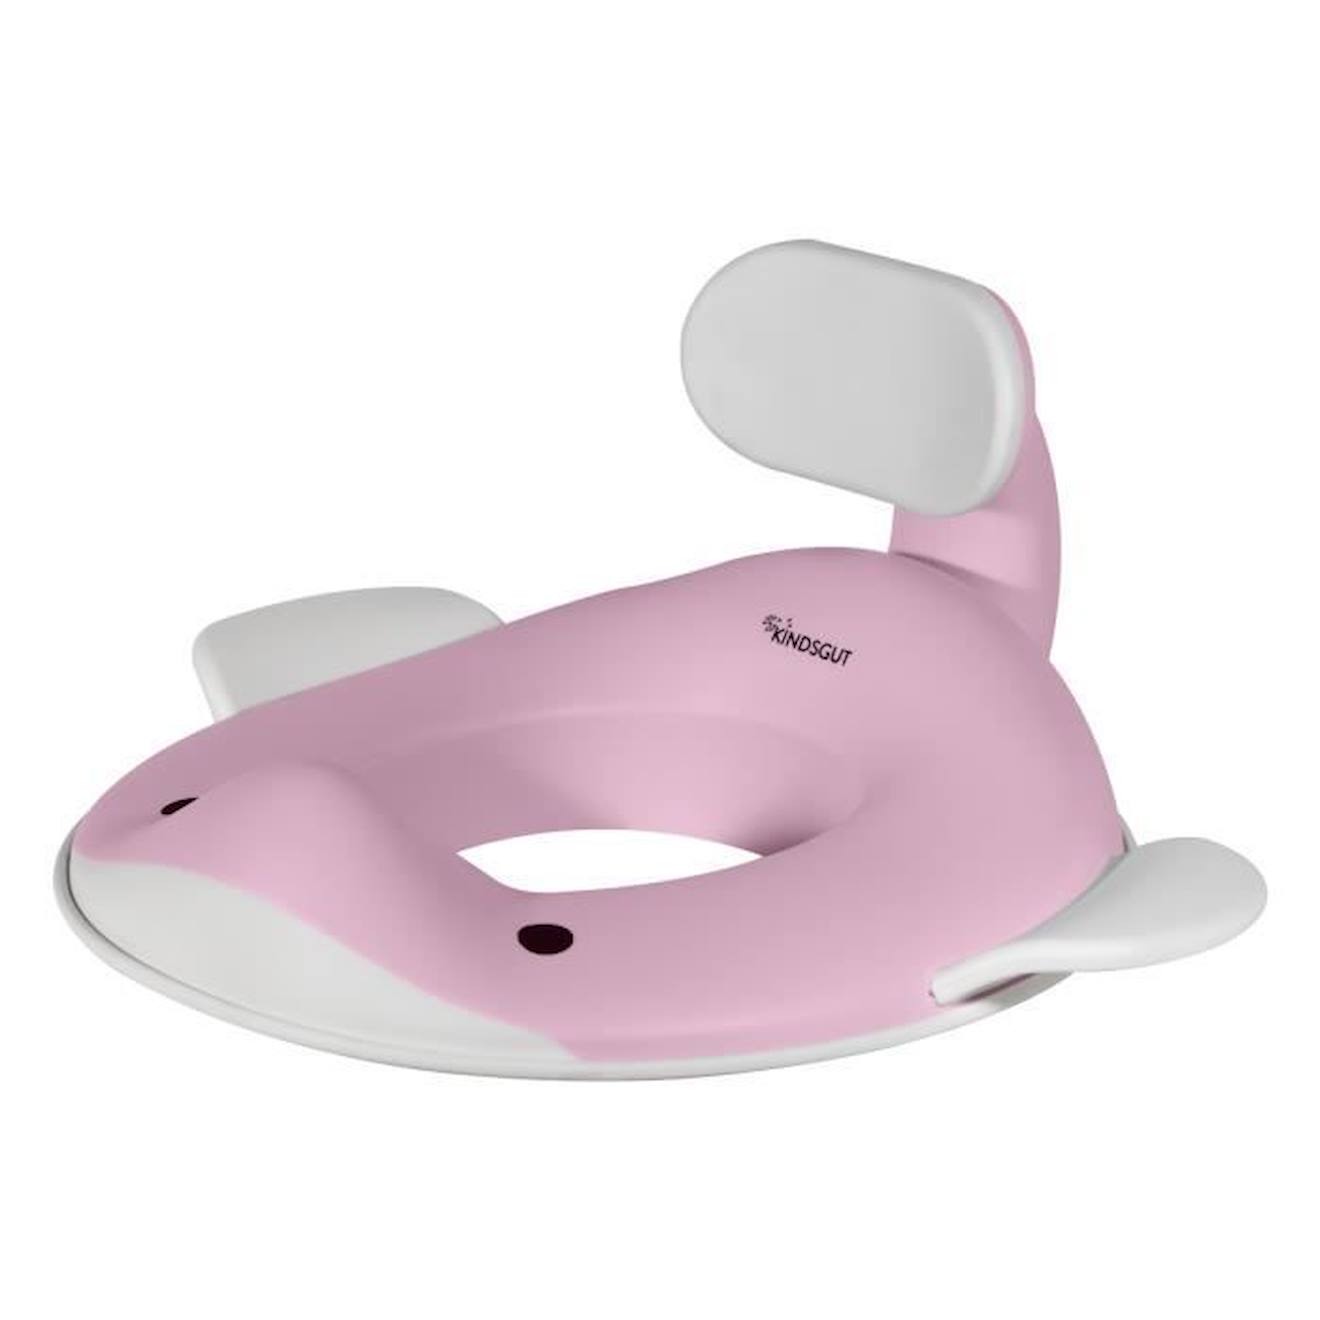 Réducteur De Toilette Baleine Pour Enfants - Kindsgut - Rose Pâle - Mixte - Bébé - Plastique Rose